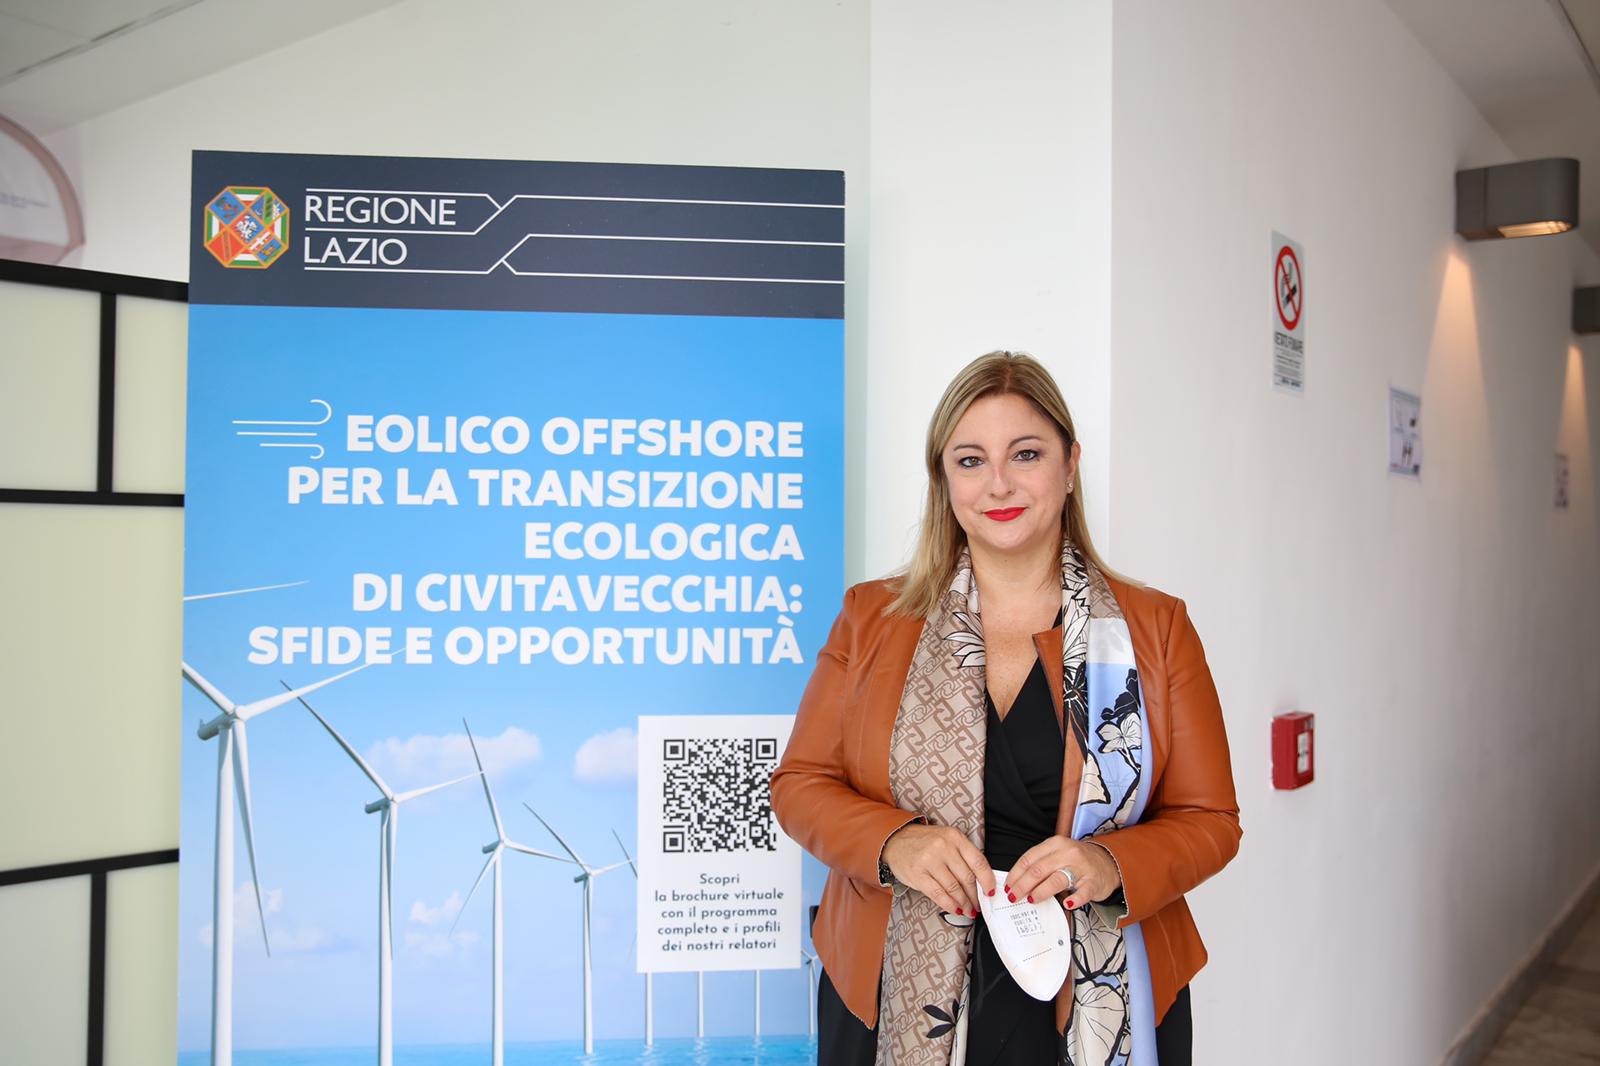 Parco eolico offshore di Civitavecchia, opera strategica nazionale